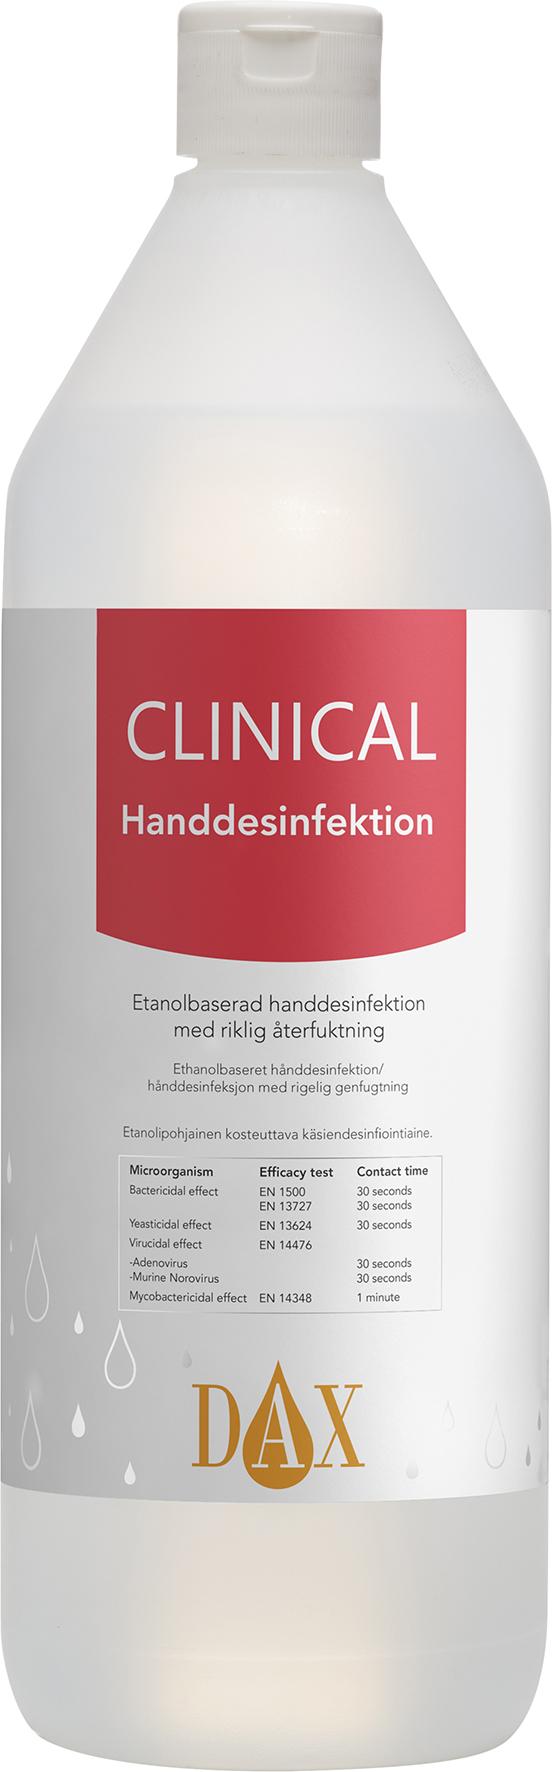 Handdesinfektion DAX Clinical 75% 1 L